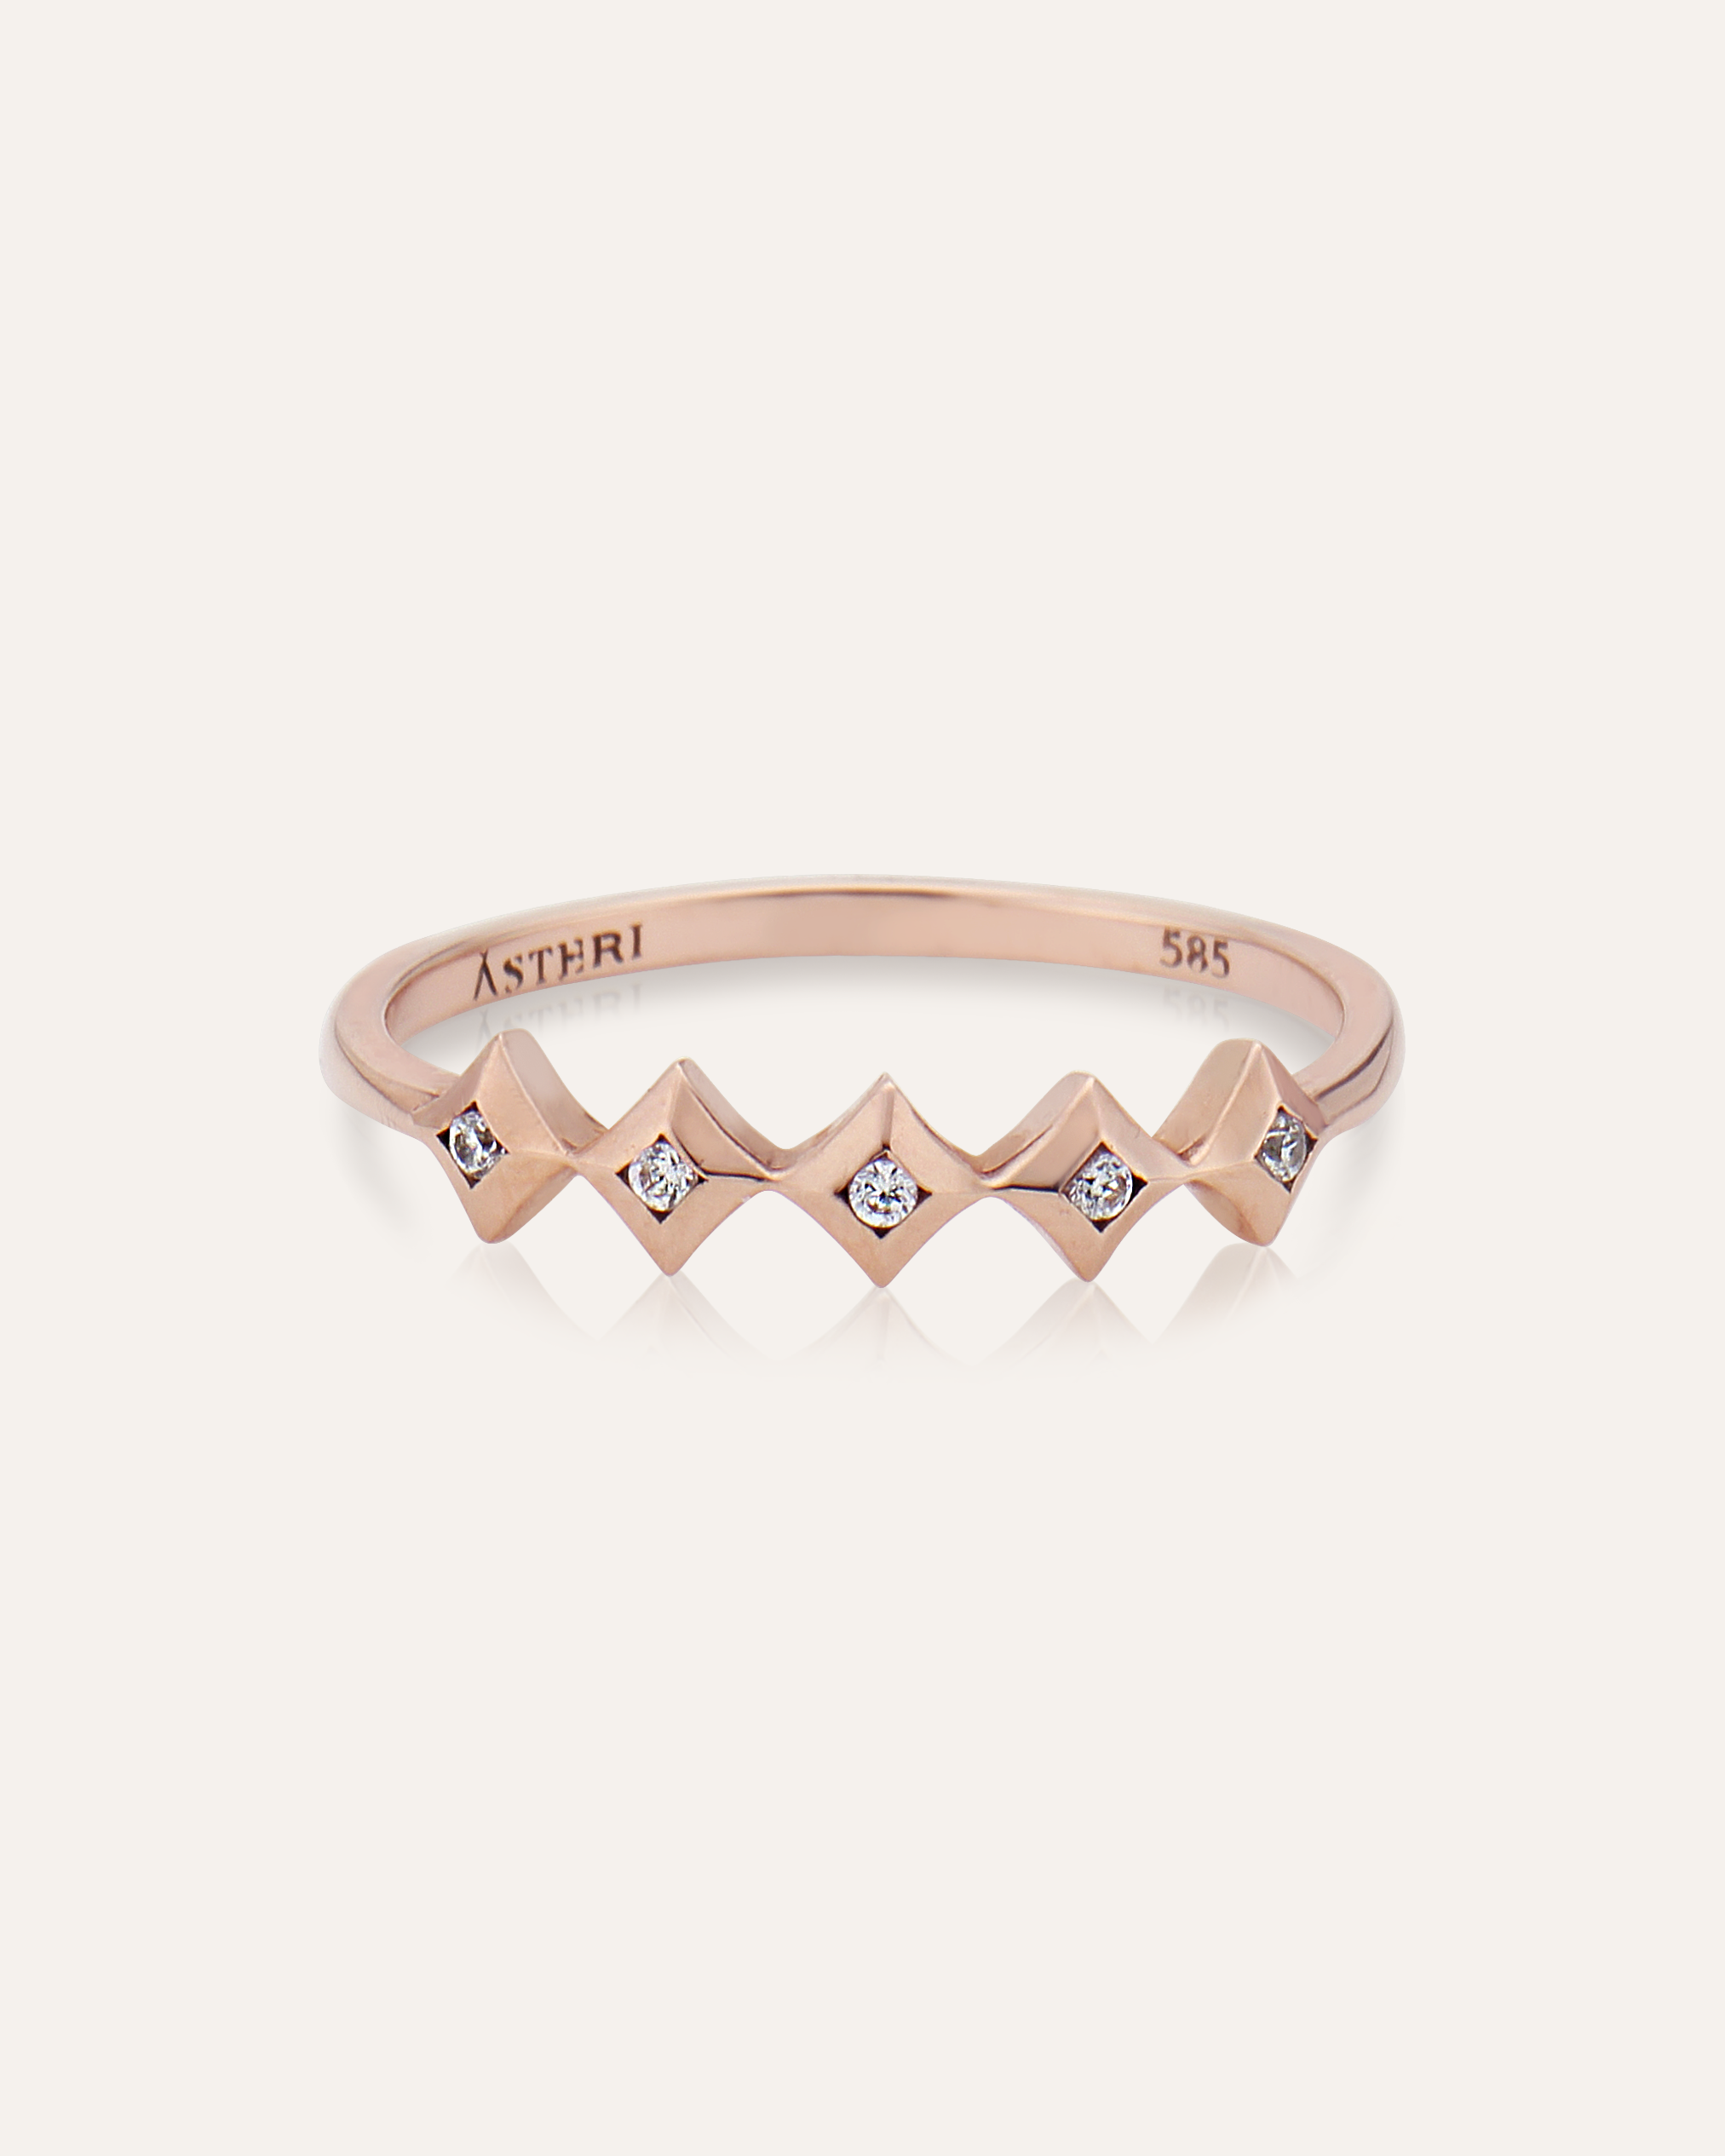 [Tiara] diamond ring